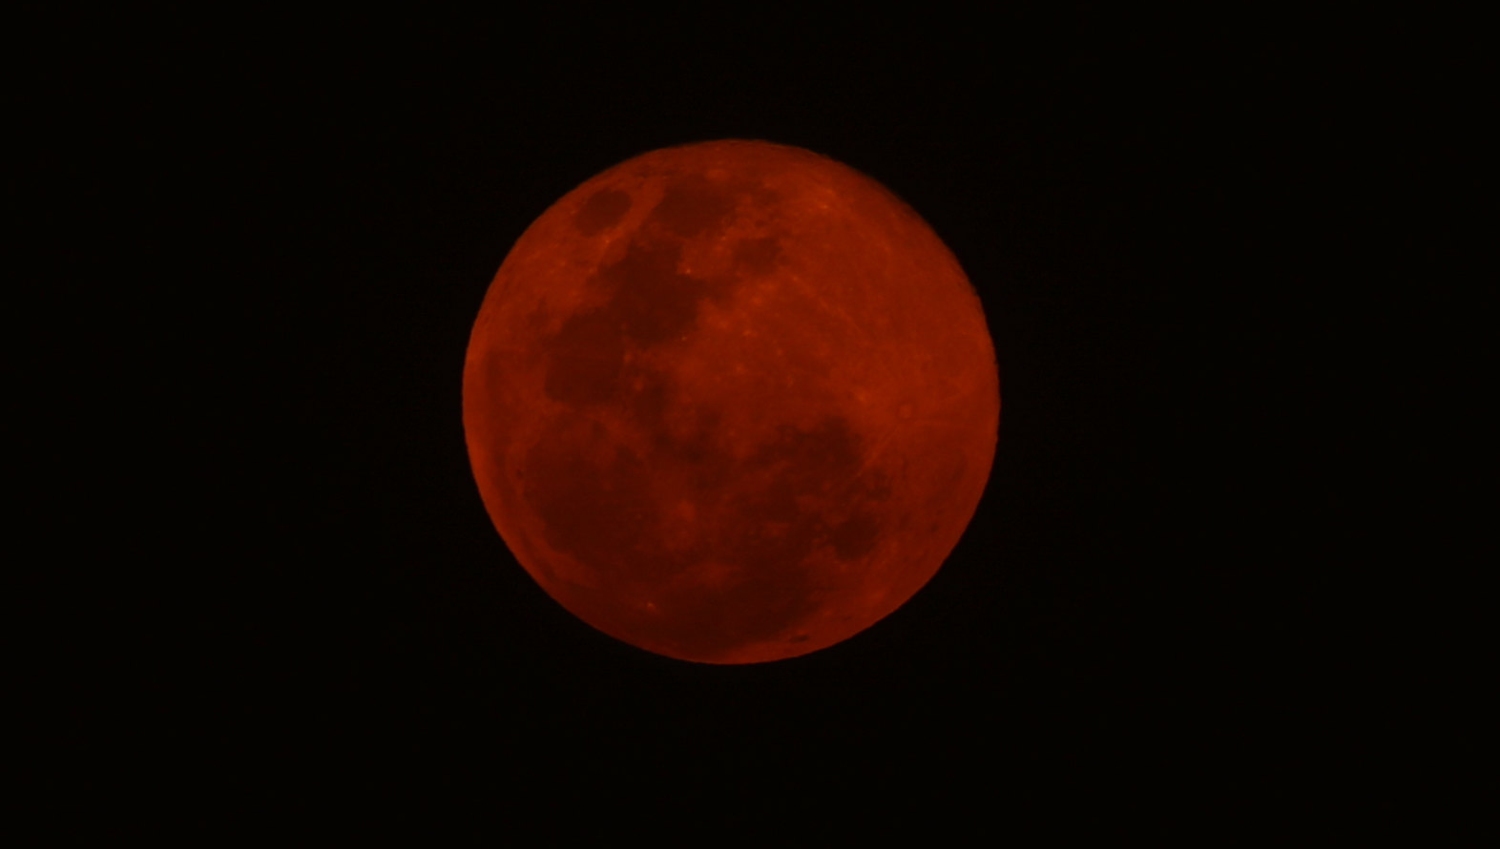 En mayo se podrá apreciar el Eclipse total de luna de sangre. (Foto Prensa Libre: Keneth Cruz)
